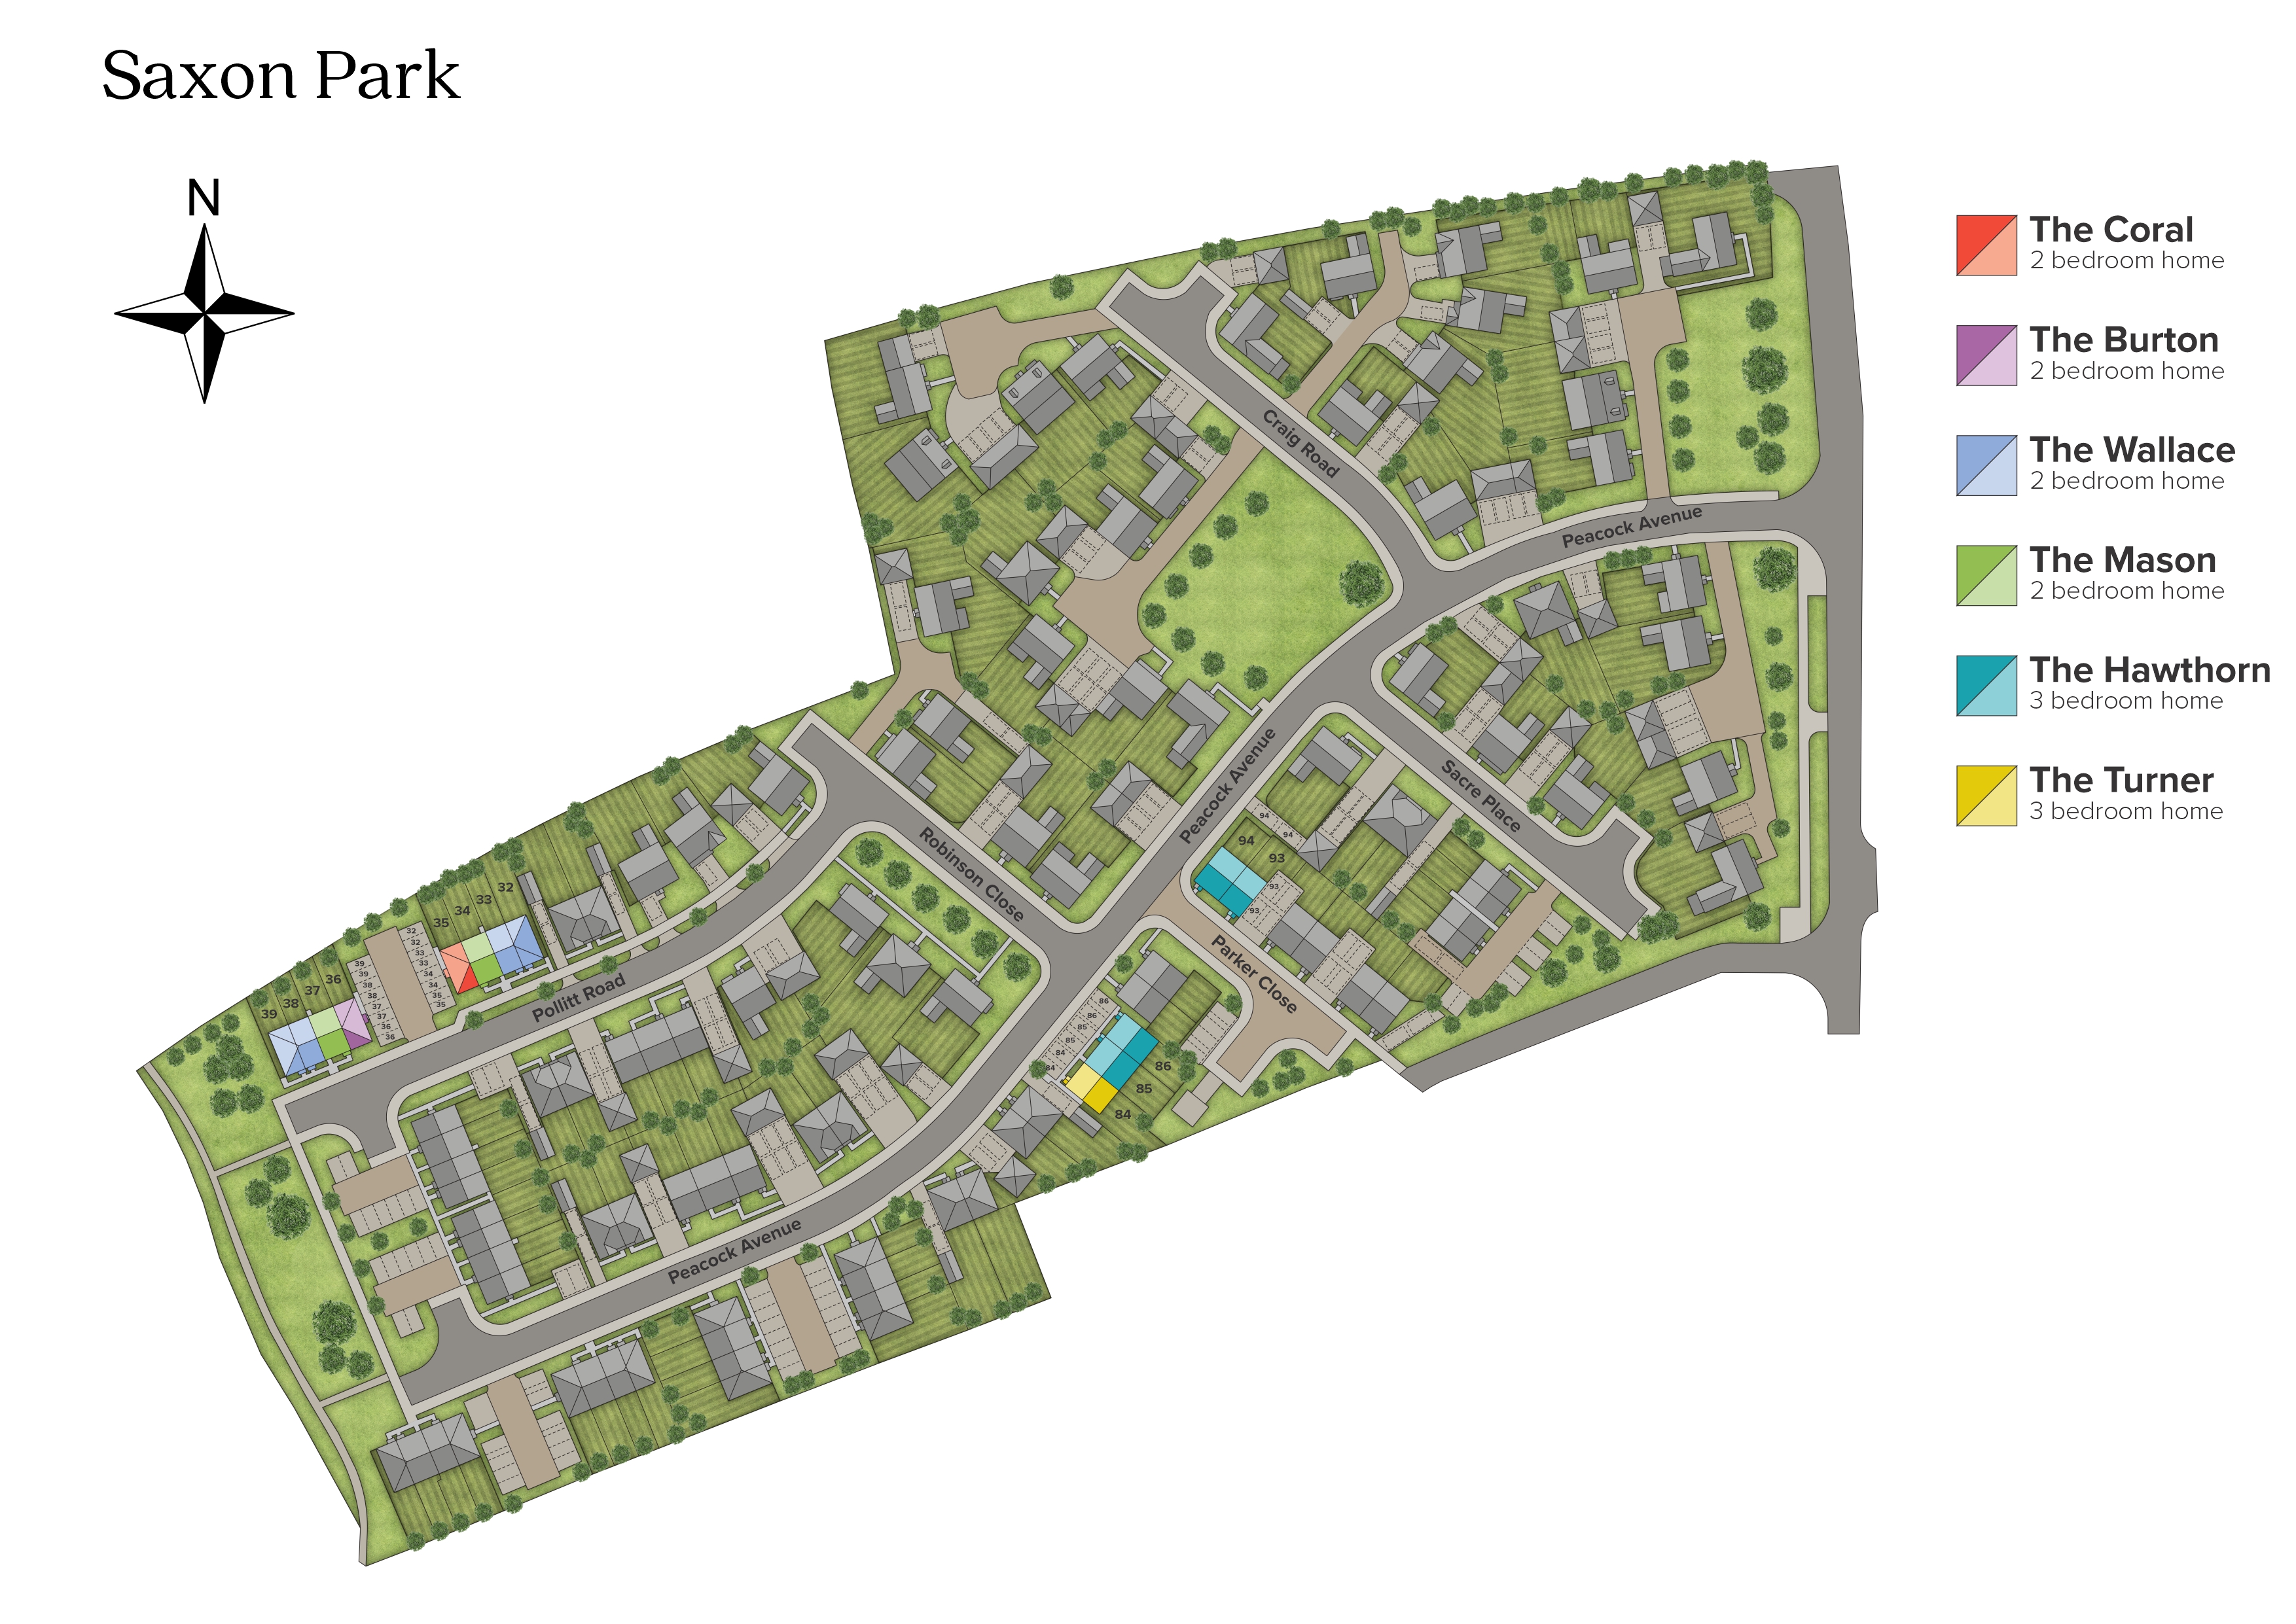 Saxon Park development plan